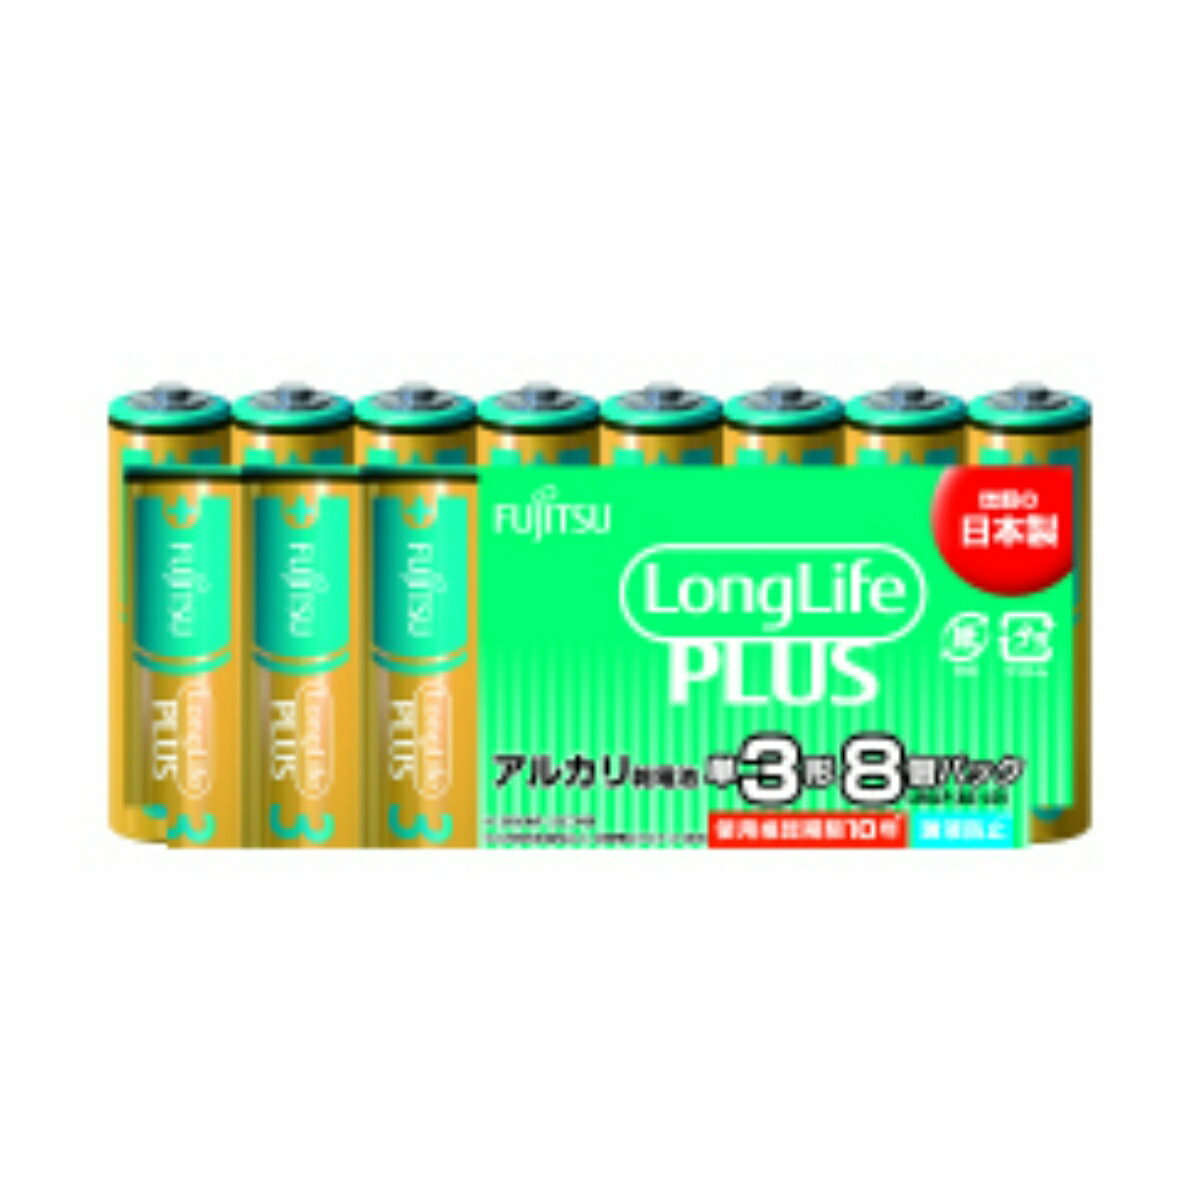 【令和・早い者勝ちセール】FDK FUJITSU Long LifePLUS ロング ライフプラス アルカリ 乾電池 LR6LP(8S) 単3形 8個パック